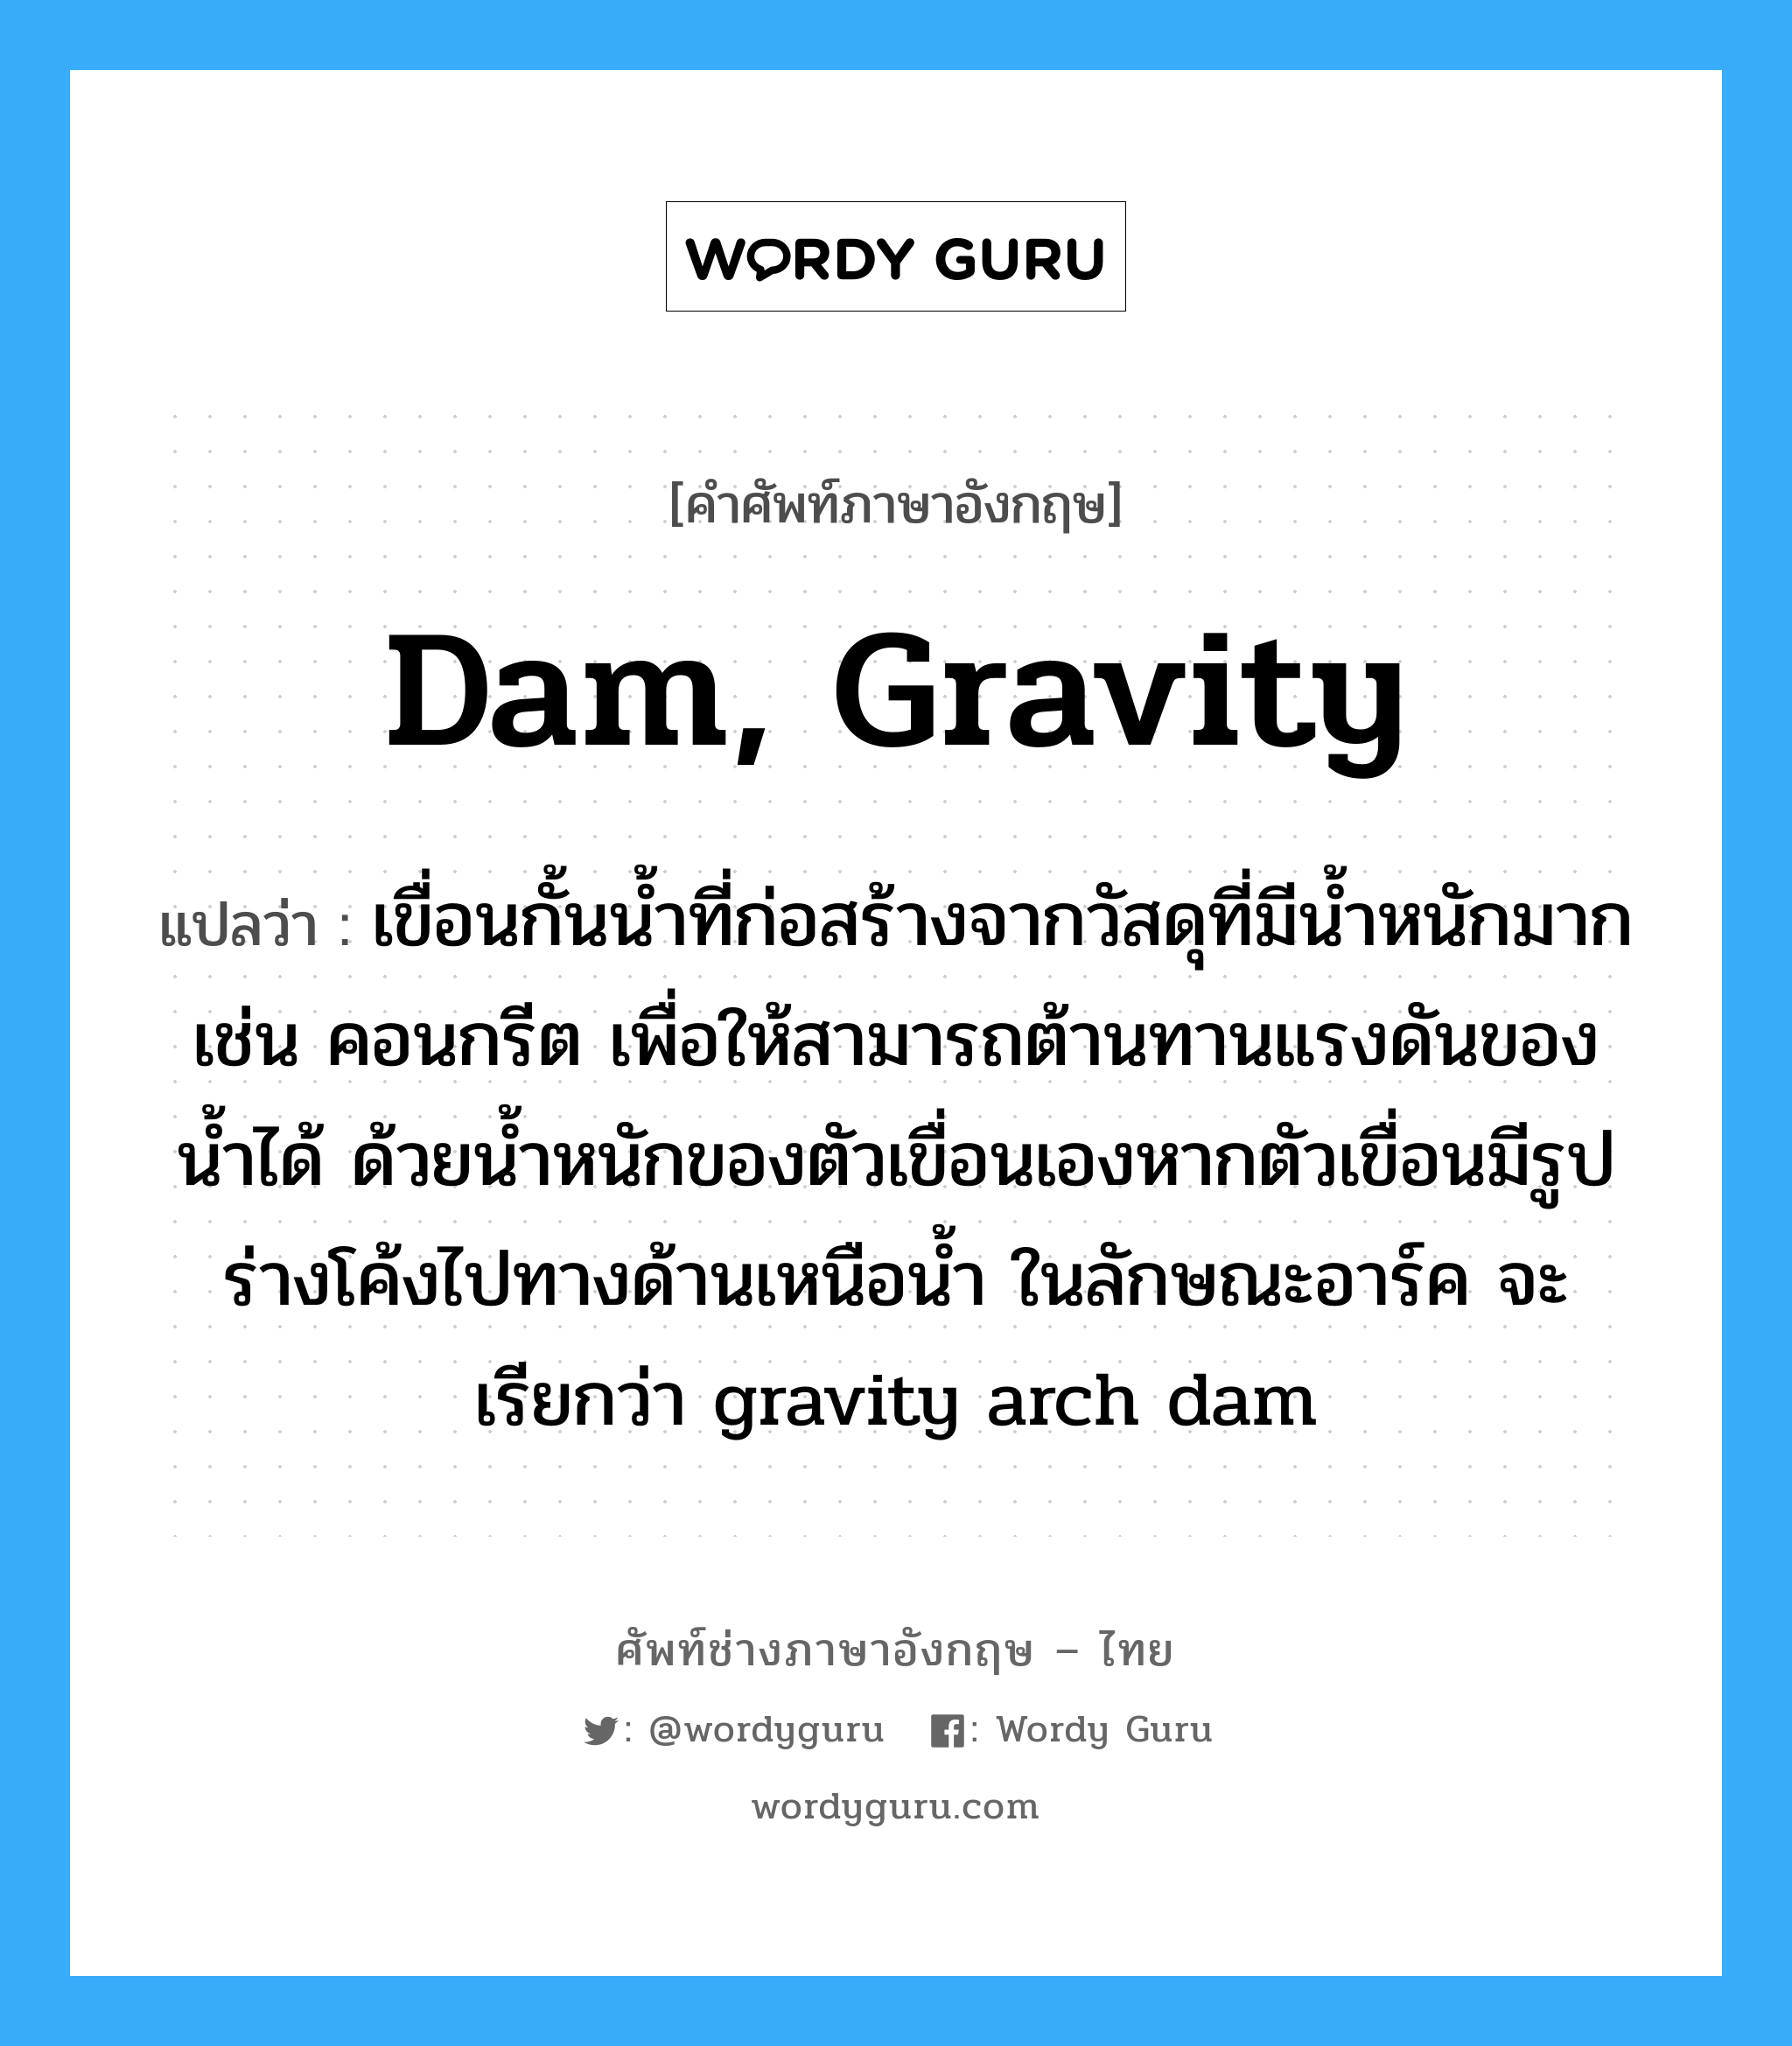 dam, gravity แปลว่า?, คำศัพท์ช่างภาษาอังกฤษ - ไทย dam, gravity คำศัพท์ภาษาอังกฤษ dam, gravity แปลว่า เขื่อนกั้นน้ำที่ก่อสร้างจากวัสดุที่มีน้ำหนักมาก เช่น คอนกรีต เพื่อให้สามารถต้านทานแรงดันของน้ำได้ ด้วยน้ำหนักของตัวเขื่อนเองหากตัวเขื่อนมีรูปร่างโค้งไปทางด้านเหนือน้ำ ในลักษณะอาร์ค จะเรียกว่า gravity arch dam